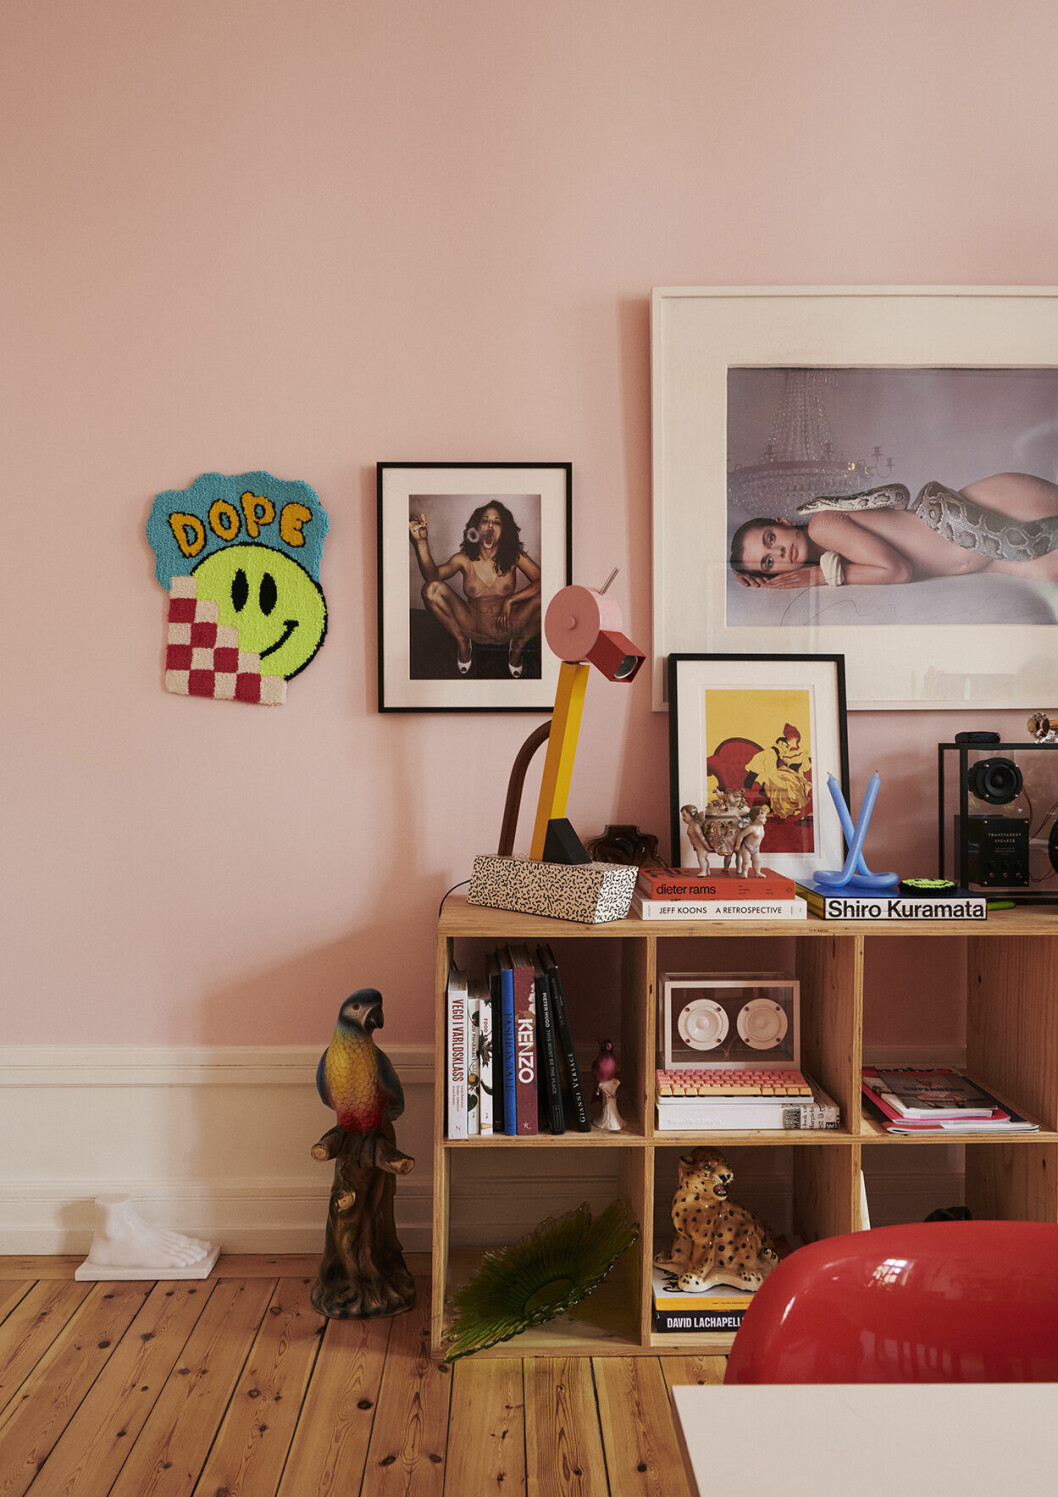 På den rosa väggen hänger det klassiska fotografiet <i>Nastassja Kinski and the serpent</i>, taget av Richard Avedon